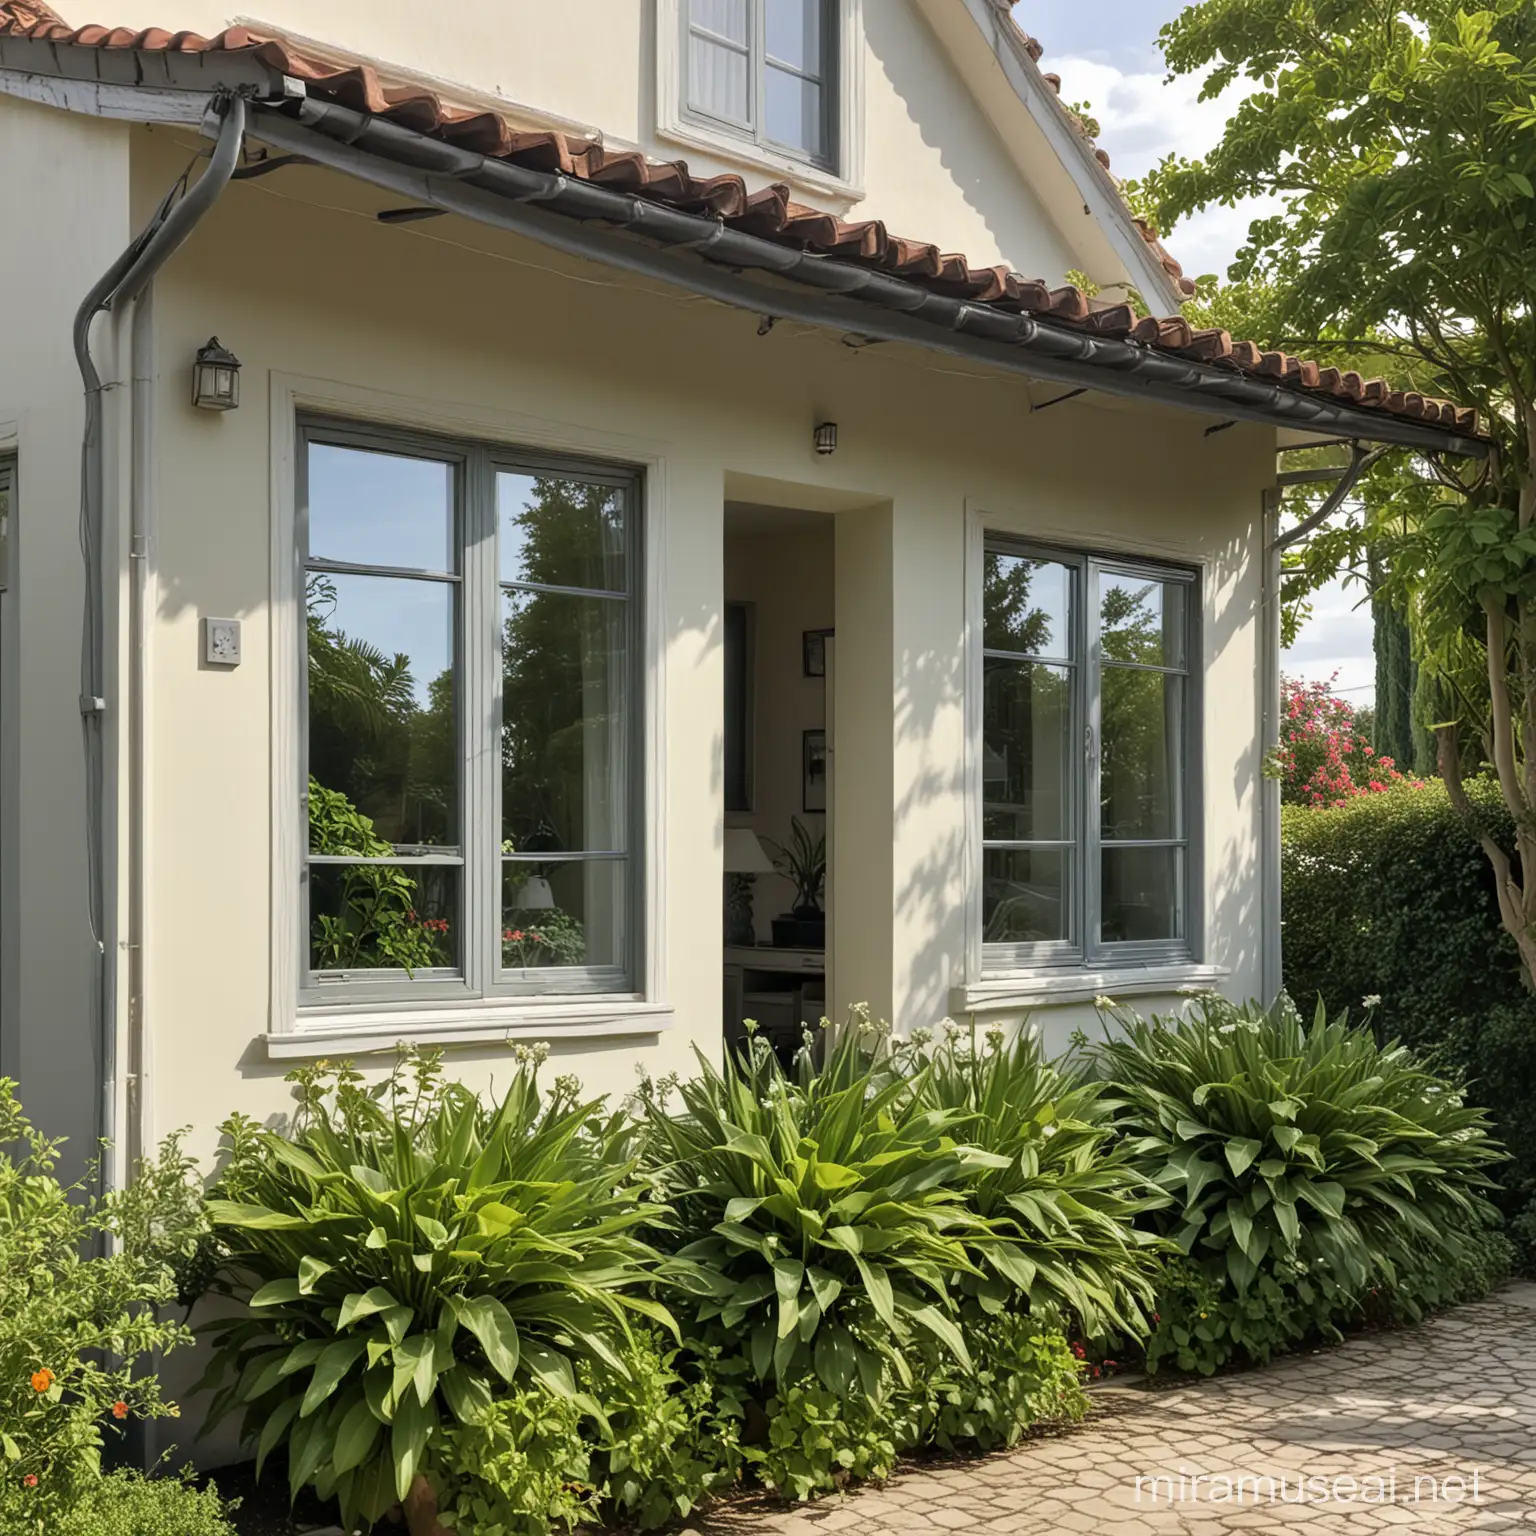 一个小别墅的正面特写，小别墅线条优美简洁，门前有绿植花草，房子有玻璃窗，玻璃窗反射着阳光